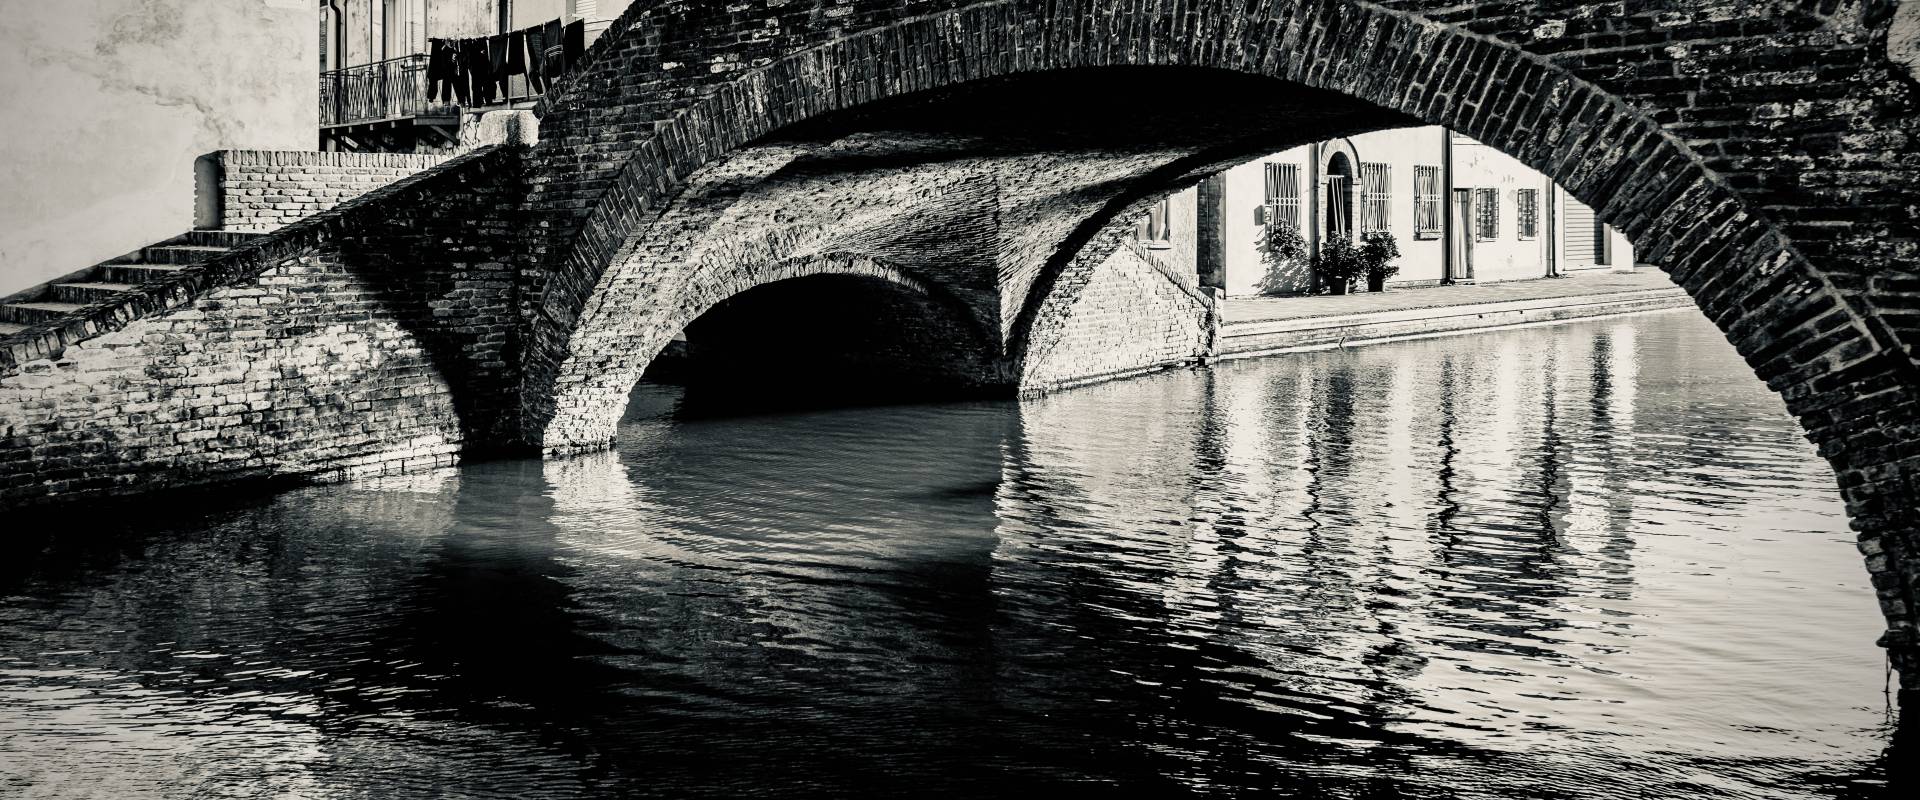 WgaECB Centro storico di Comacchio - Ponte San Pietro foto di Vanni Lazzari